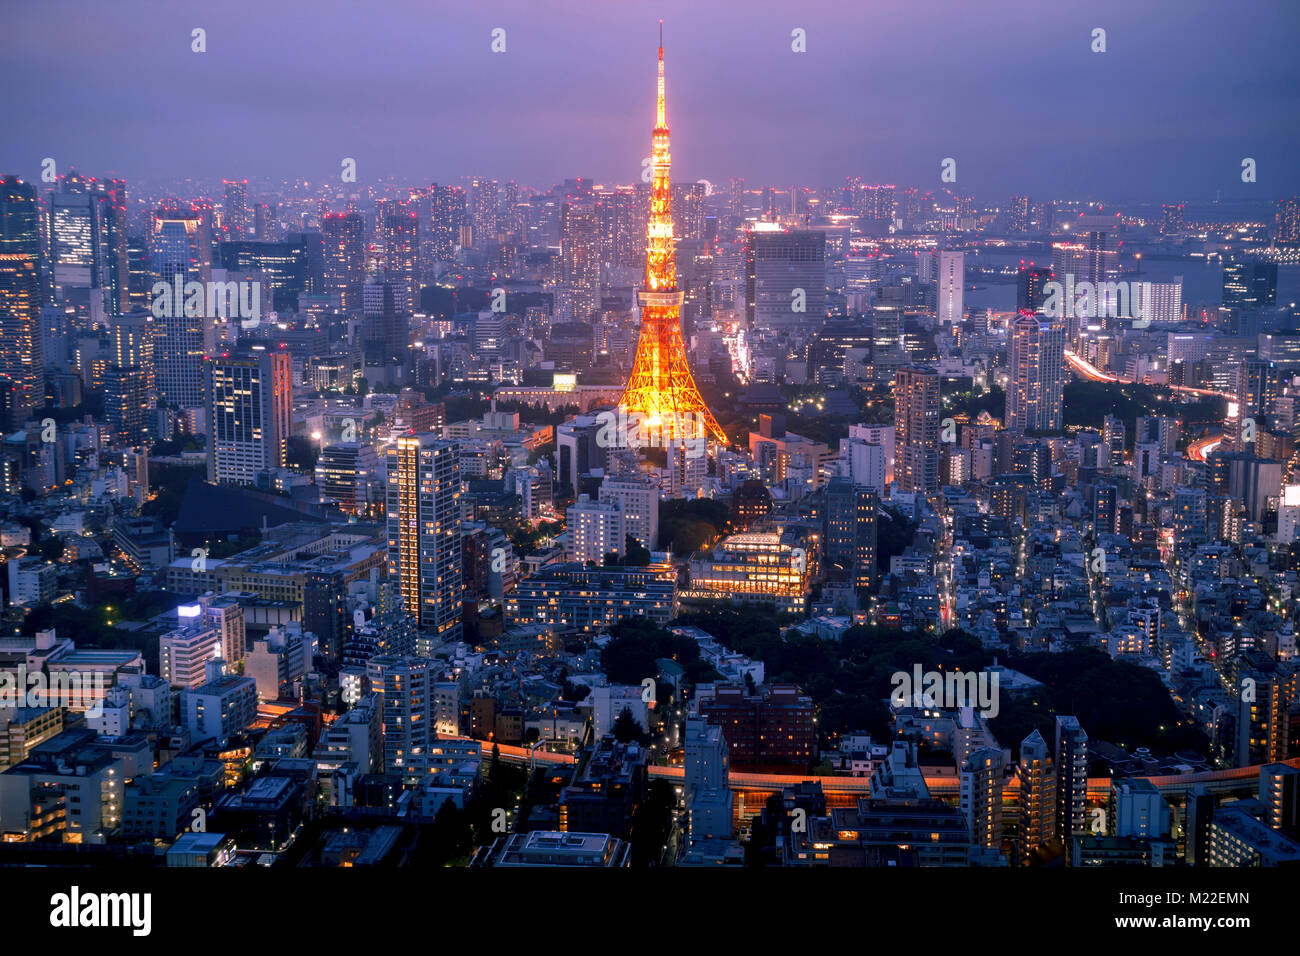 Lo skyline di Tokyo al tramonto, con la famosa Torre di Tokyo Foto Stock